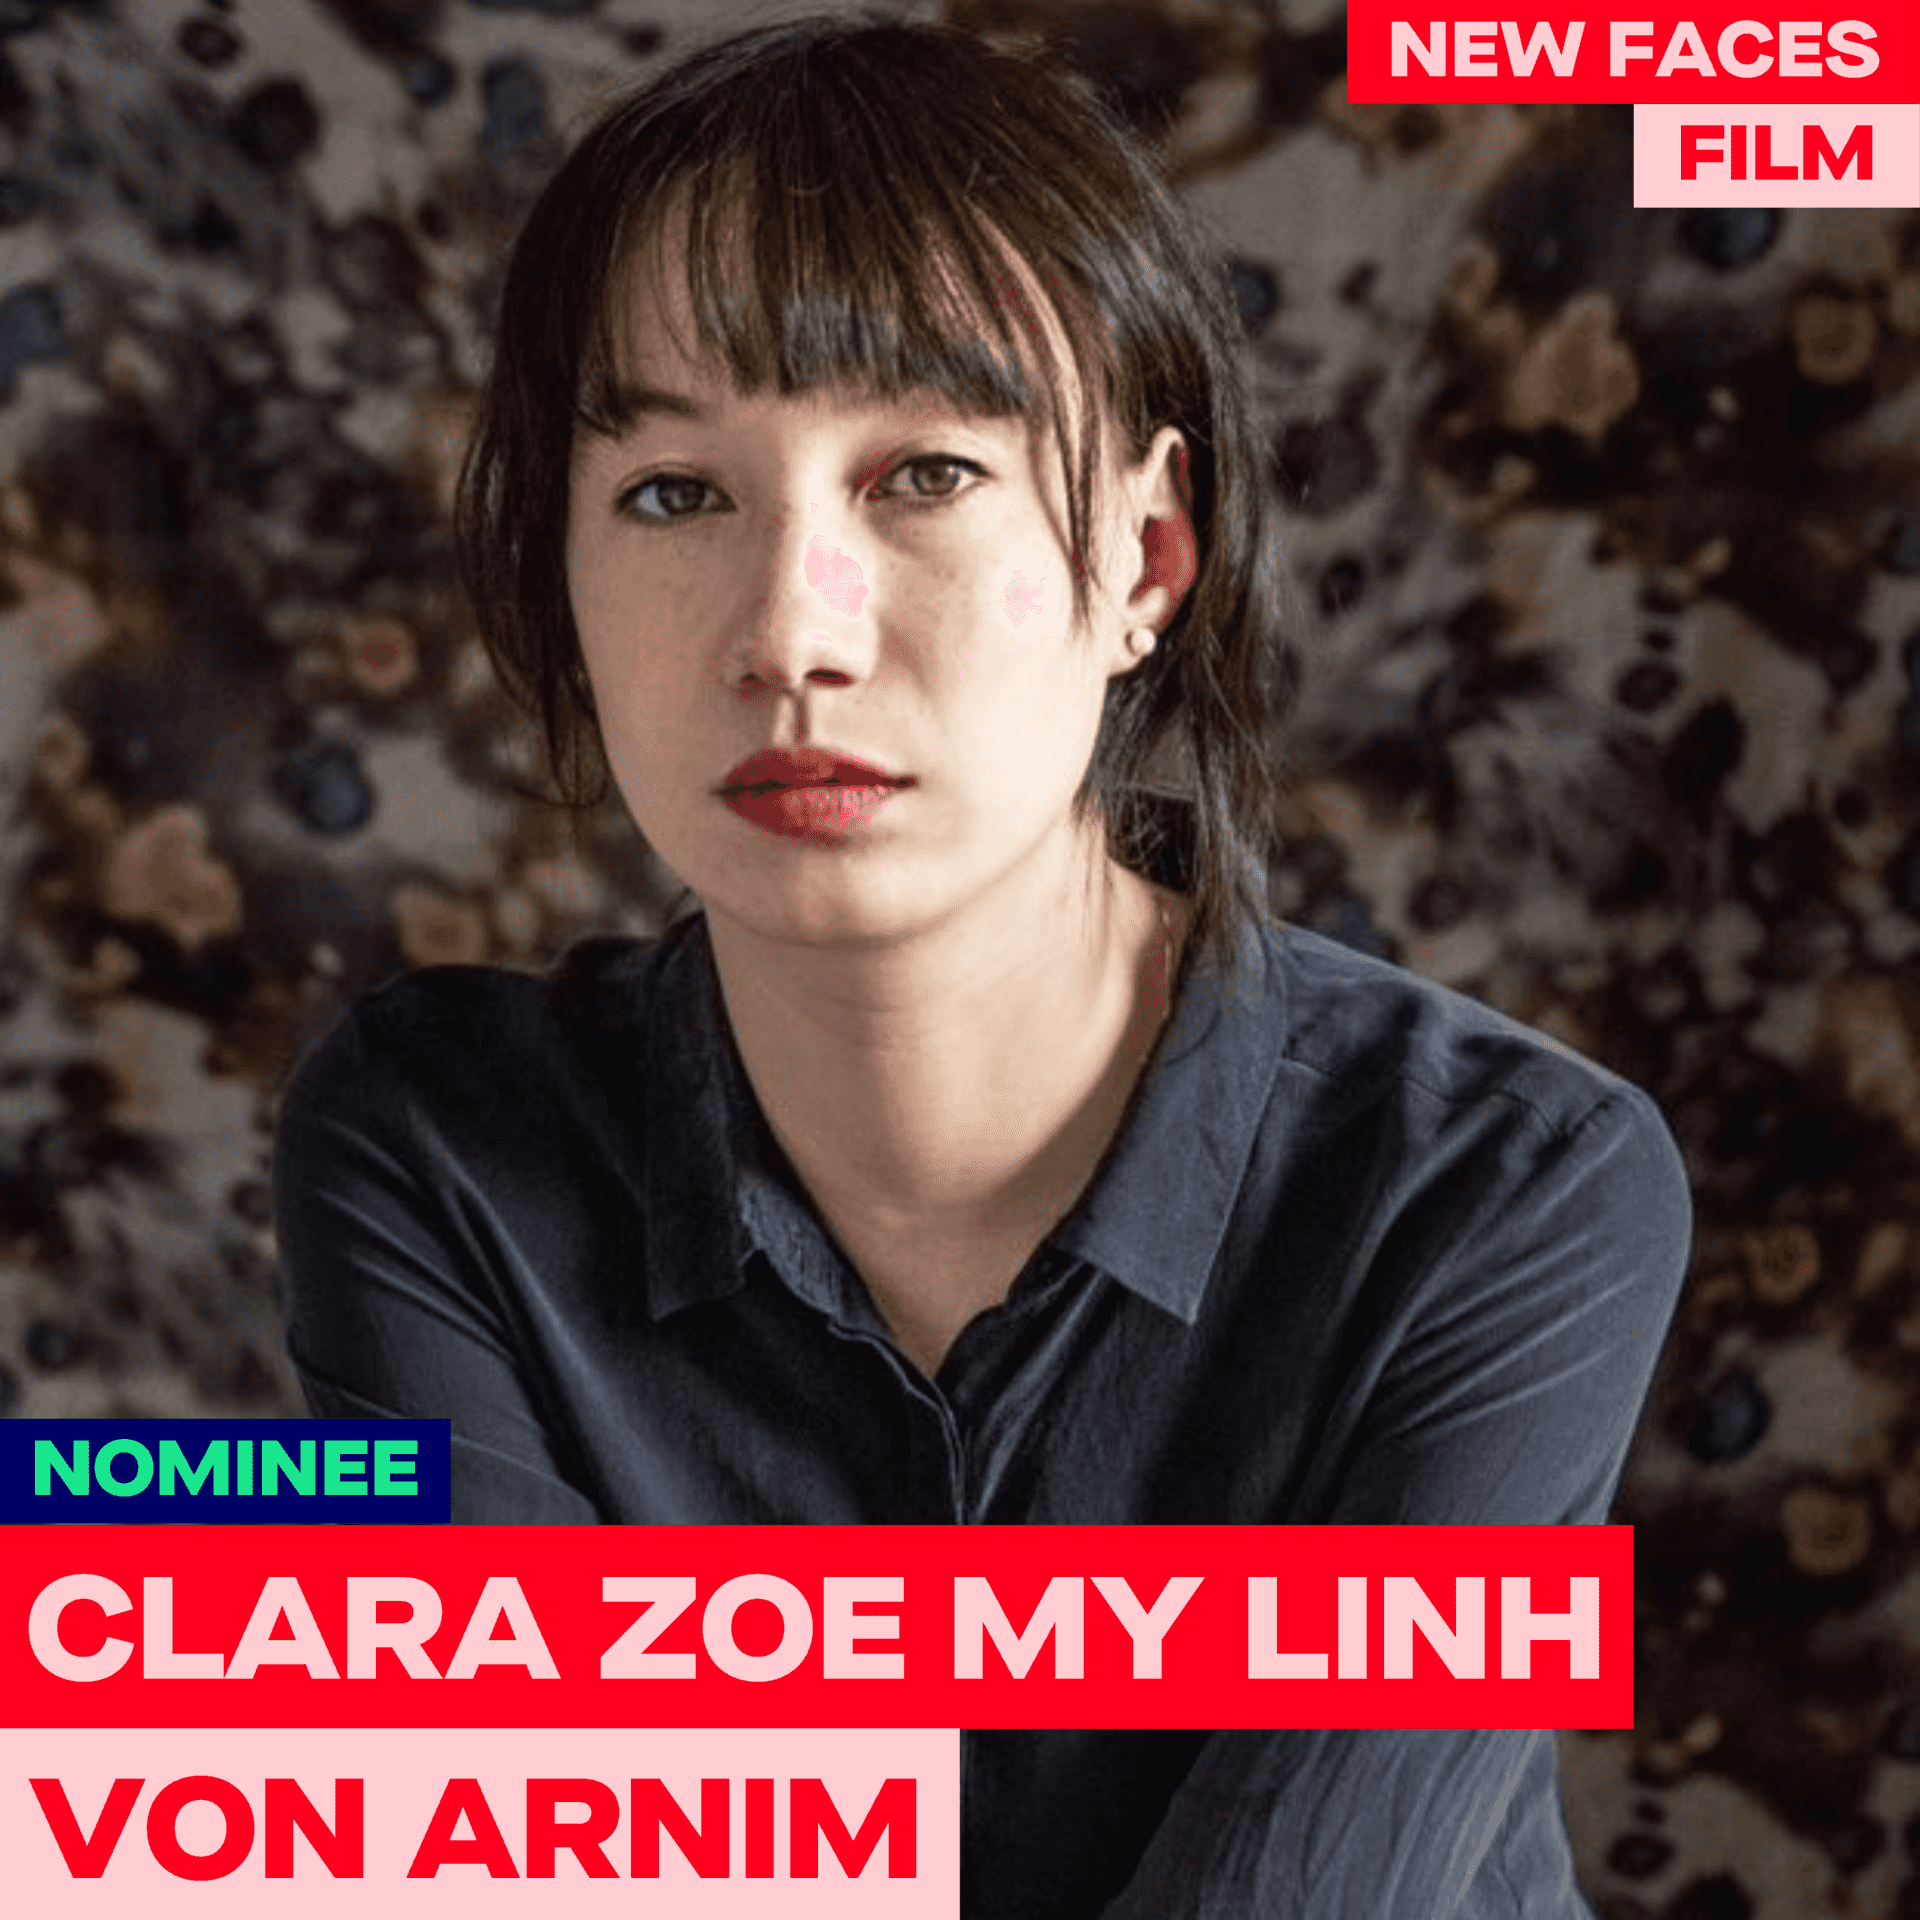 Clara Zoe My Linh von Arnim